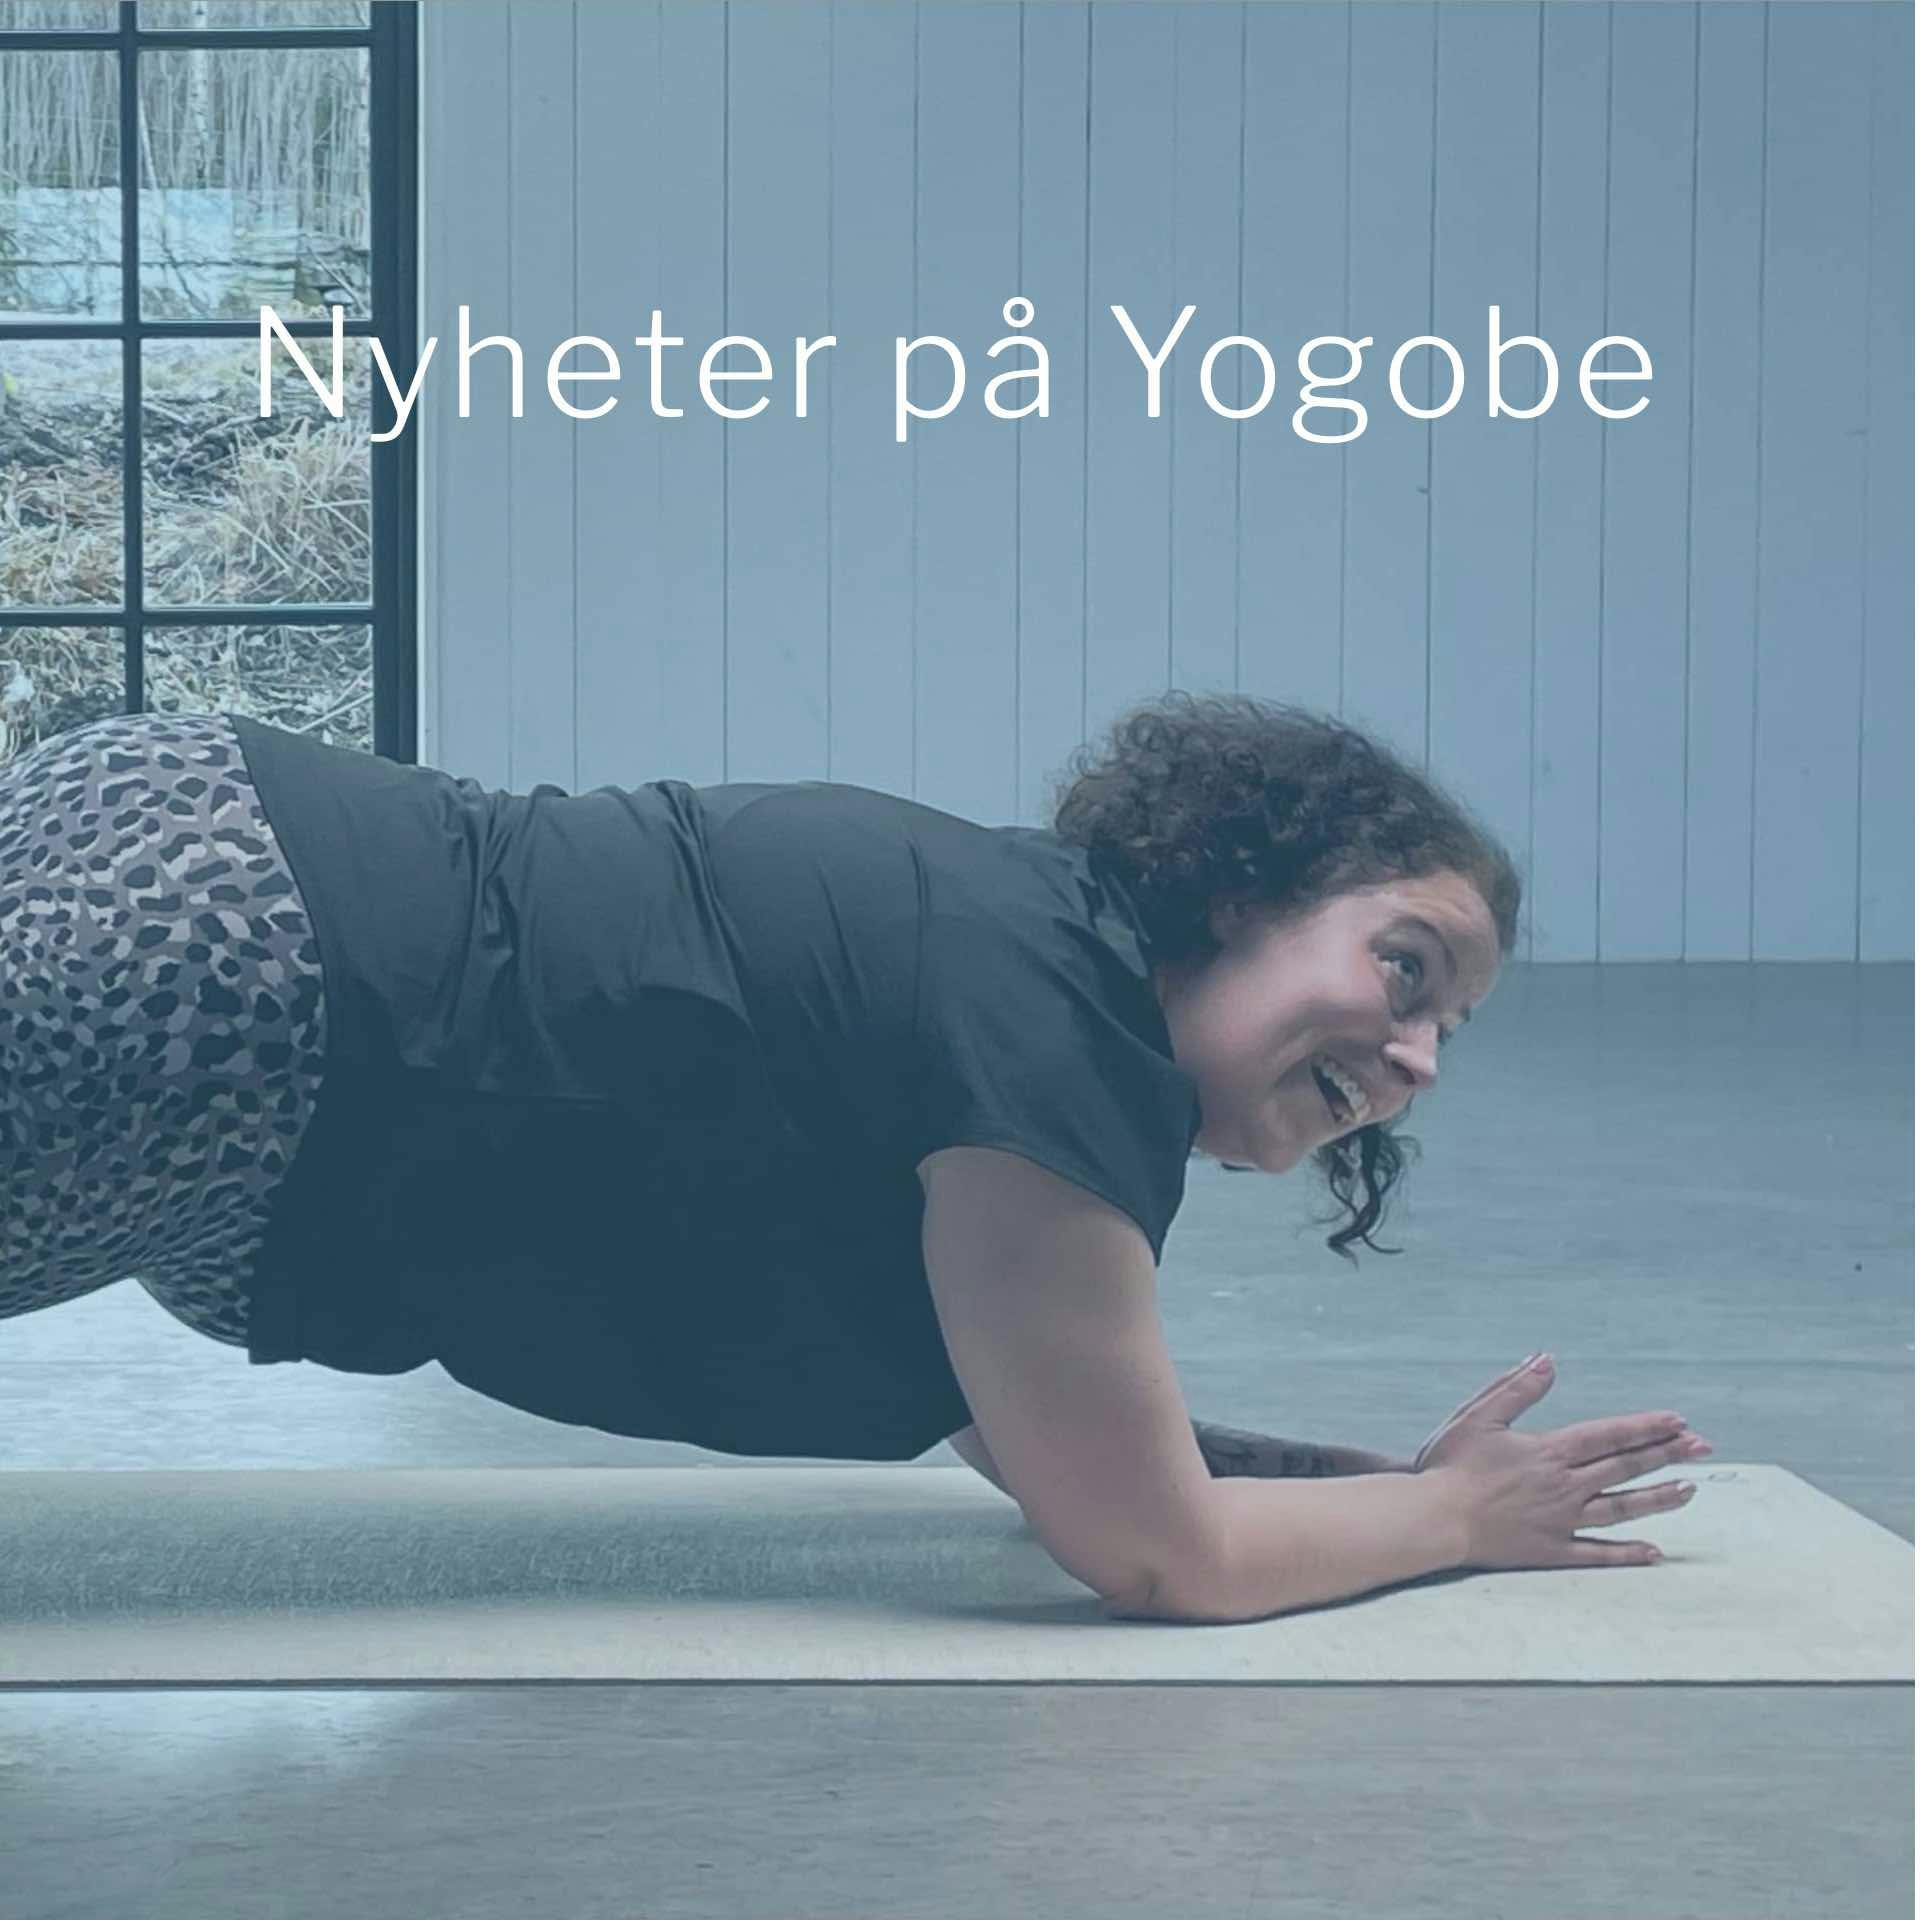 Ta del av våra senaste nyheter på Yogobe inom online yoga, träning, meditation och andning.